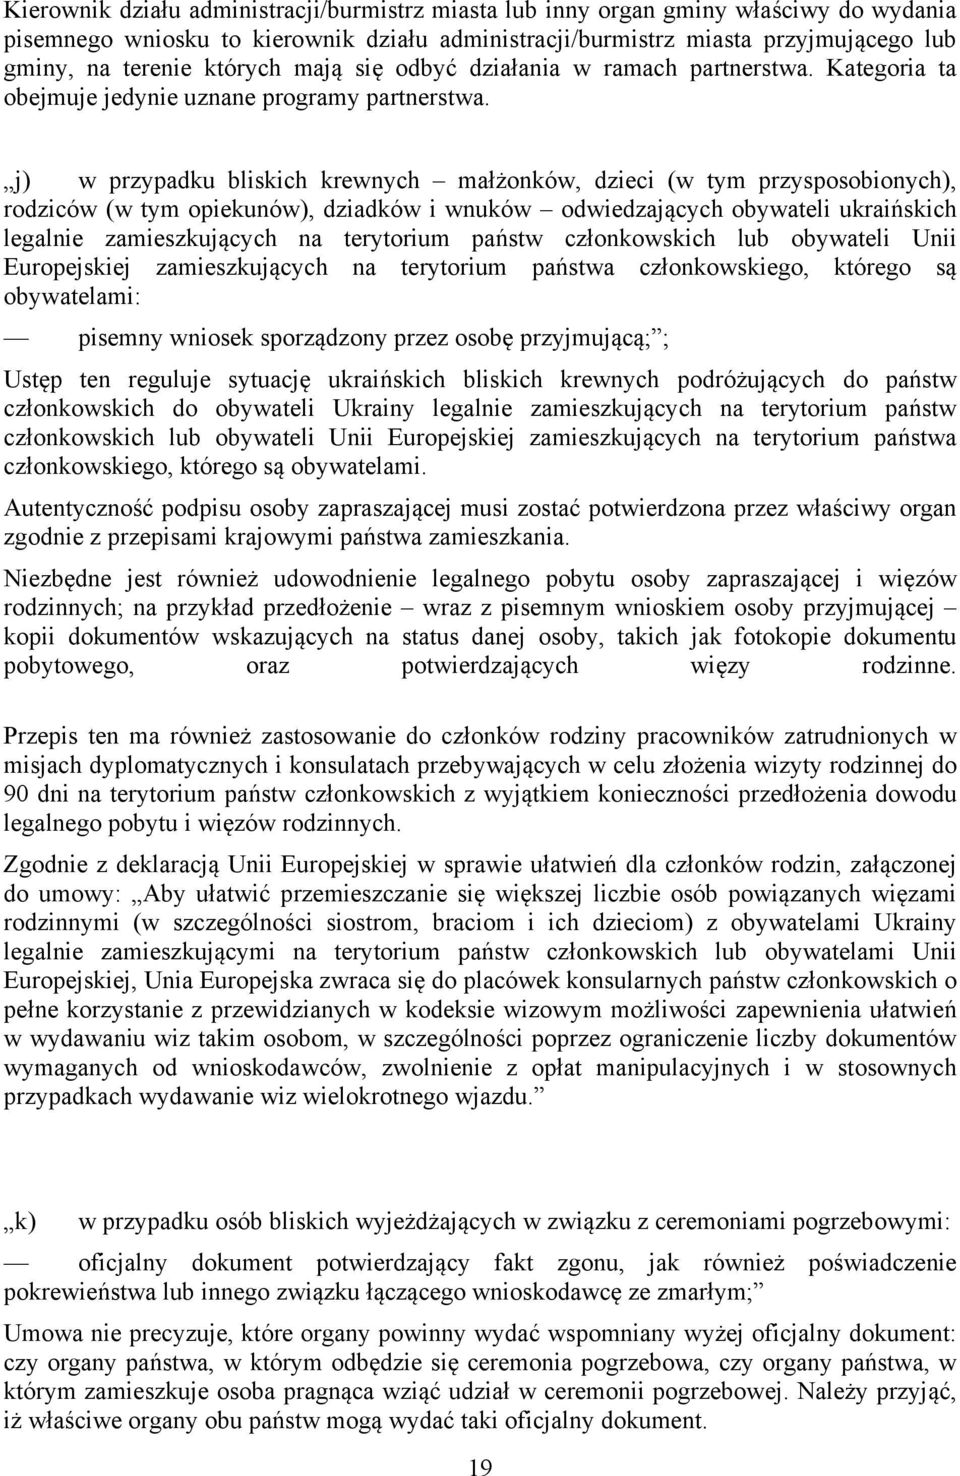 j) w przypadku bliskich krewnych małżonków, dzieci (w tym przysposobionych), rodziców (w tym opiekunów), dziadków i wnuków odwiedzających obywateli ukraińskich legalnie zamieszkujących na terytorium